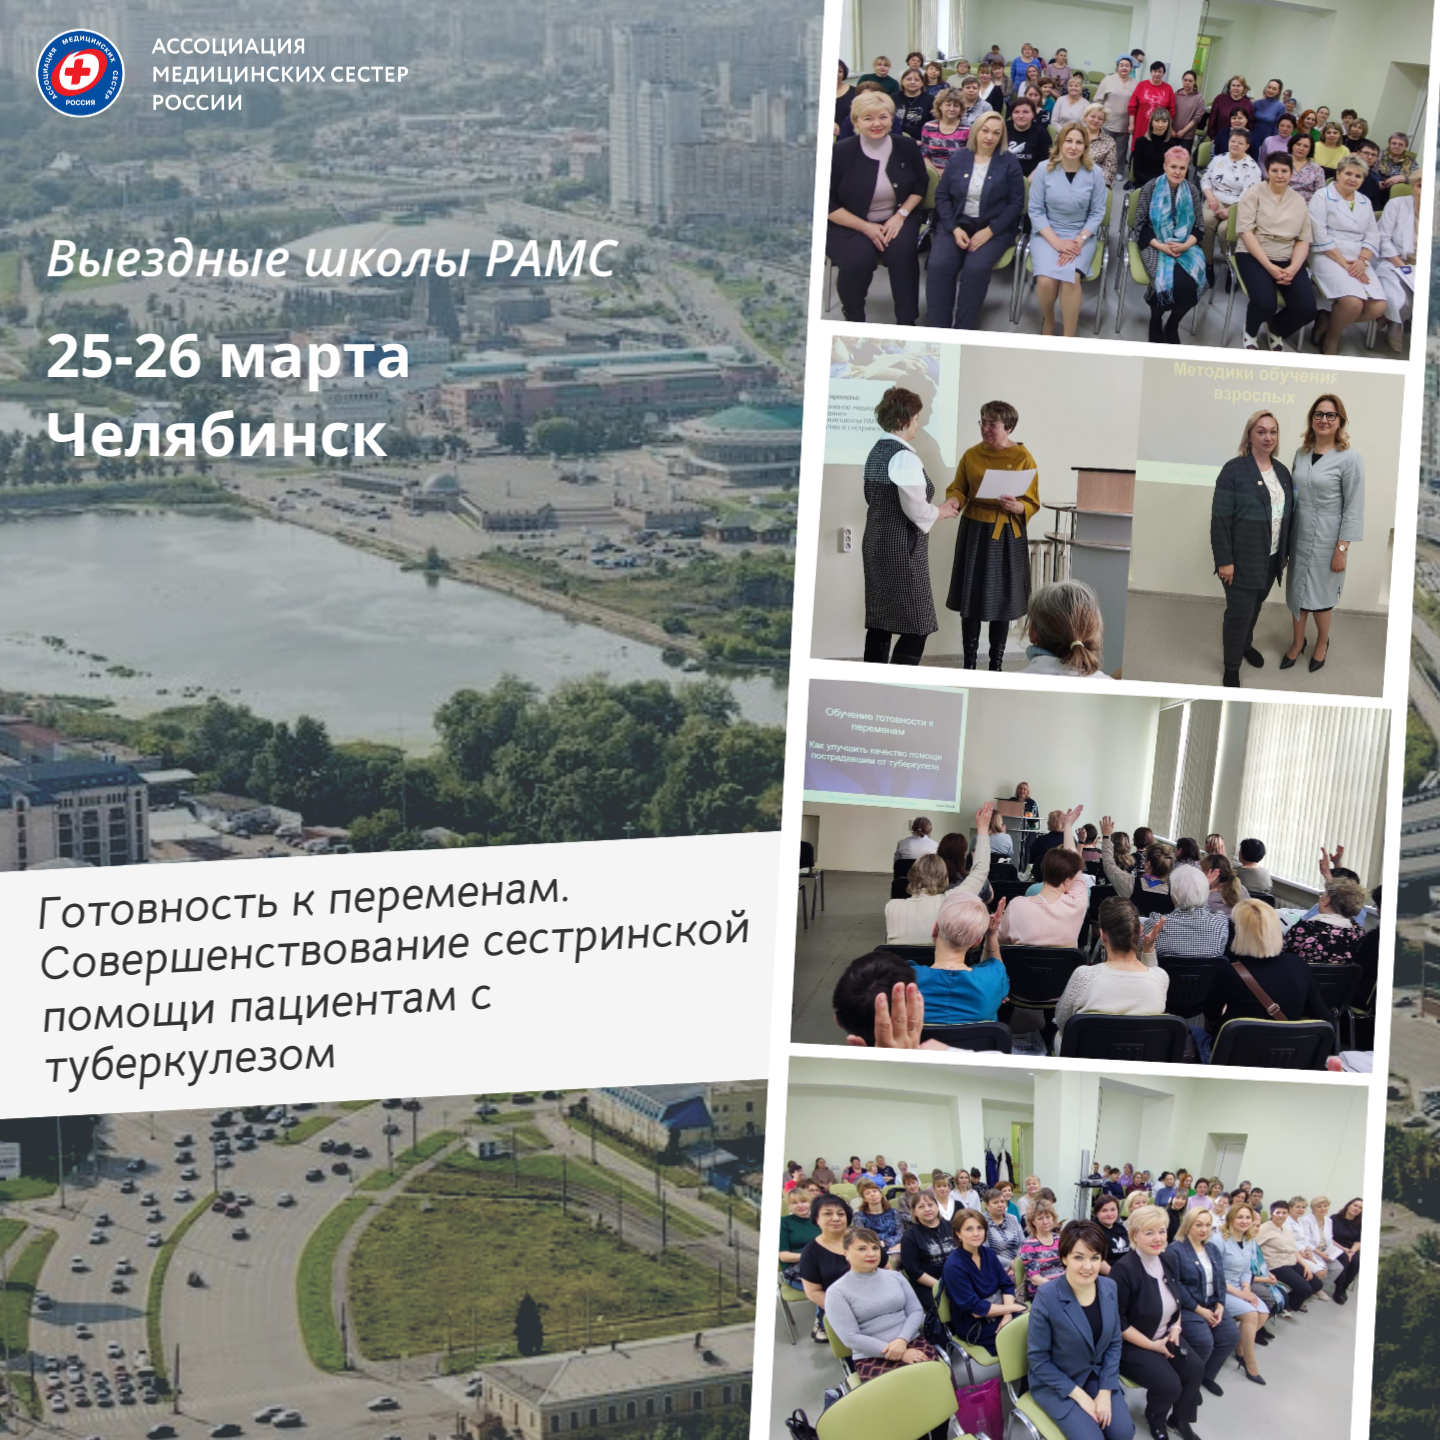 В Челябинске состоялась Выездная школа РАМС по фтизиатрии